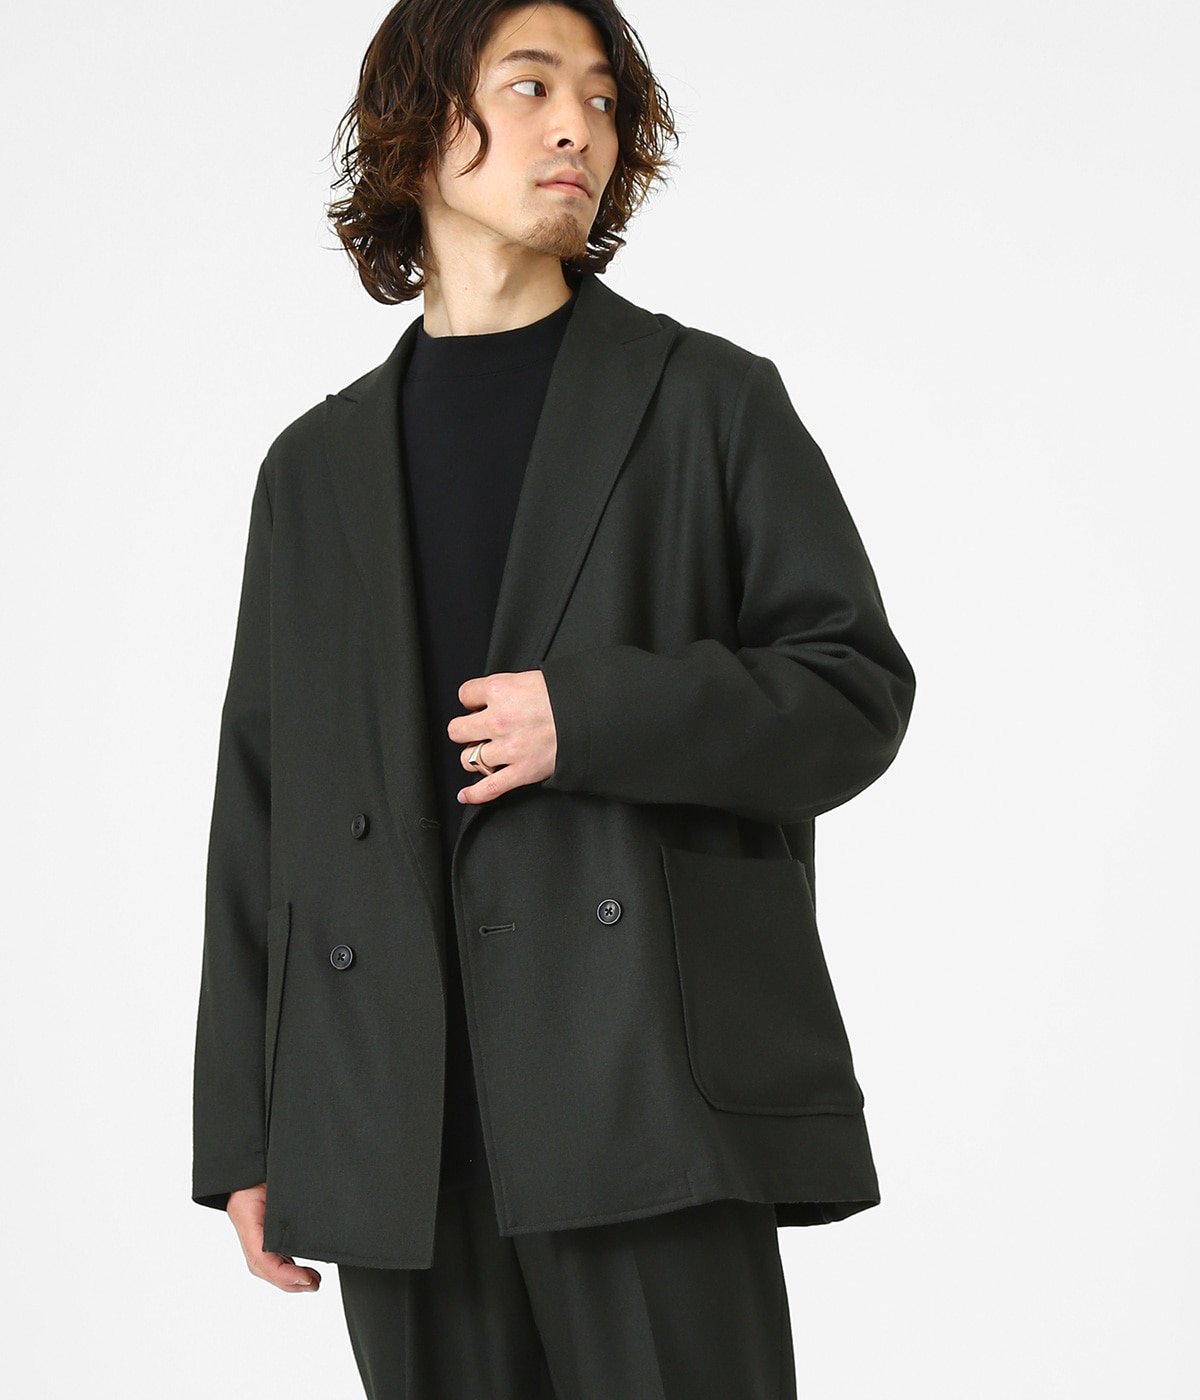 marka SOFT WOOL SERGE shirts coat サイズ3 - ステンカラーコート